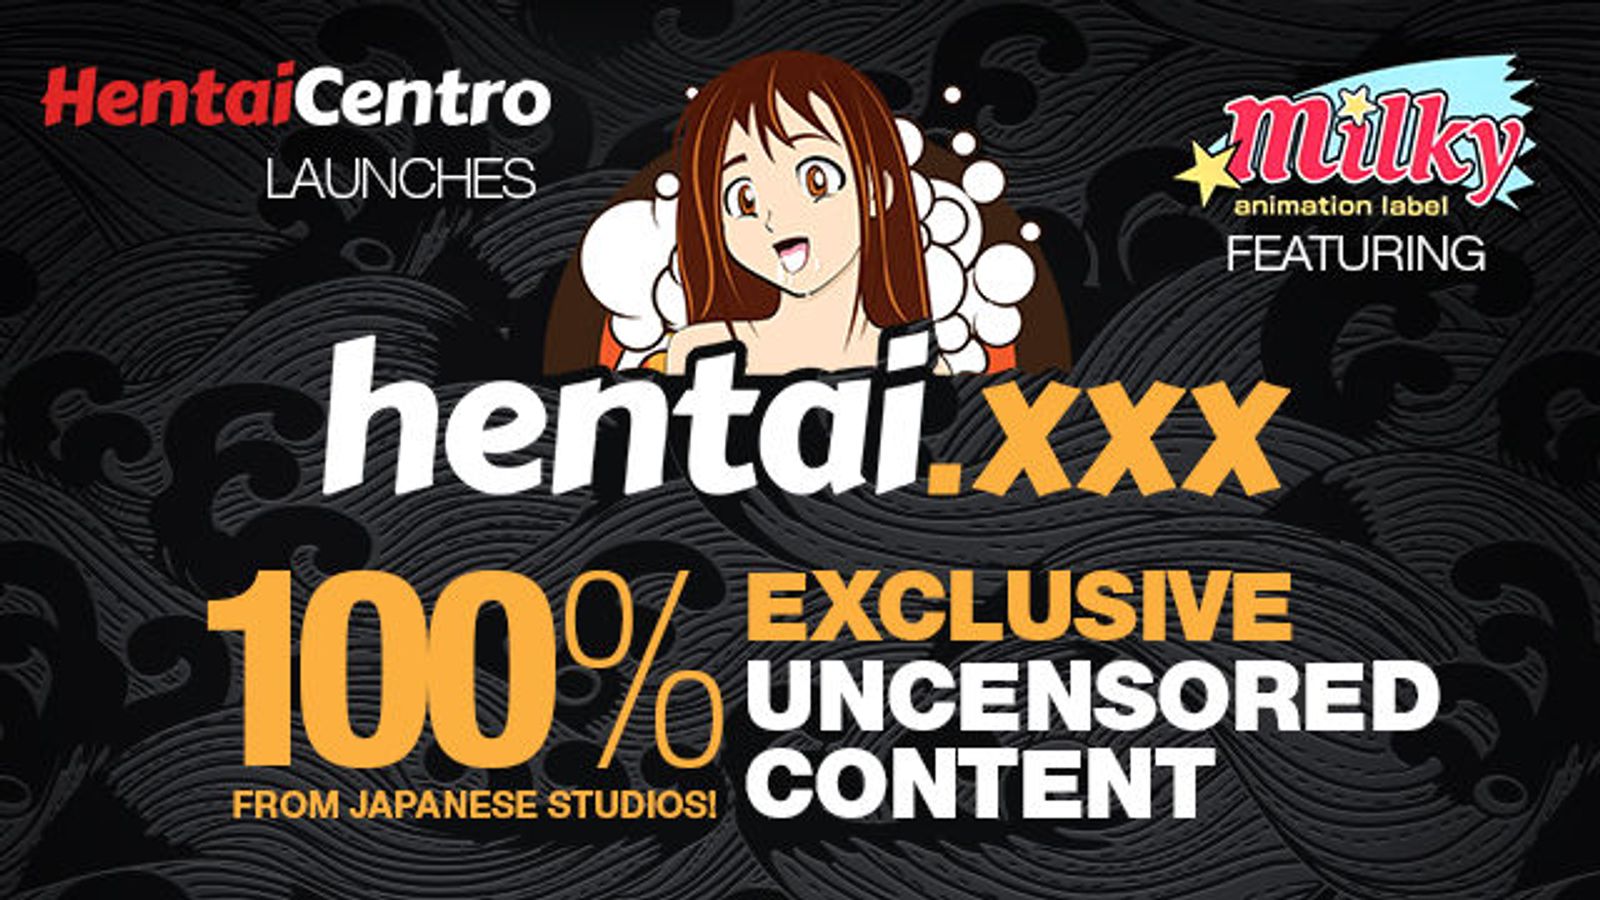 New Affiliate Program HentaiCentro Launches Hentai.xxx